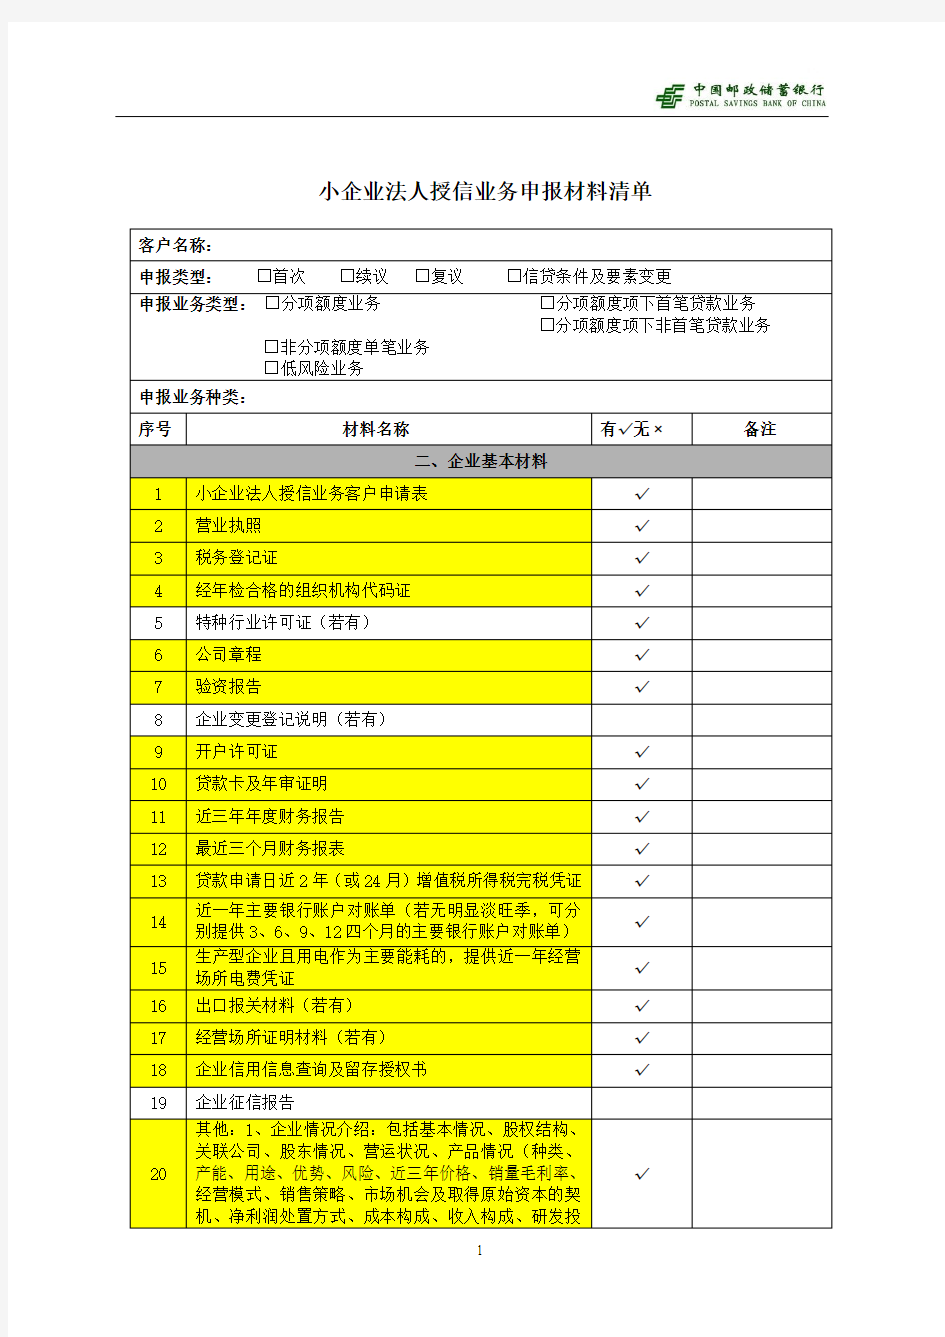 小企业业务申报材料清单(全)